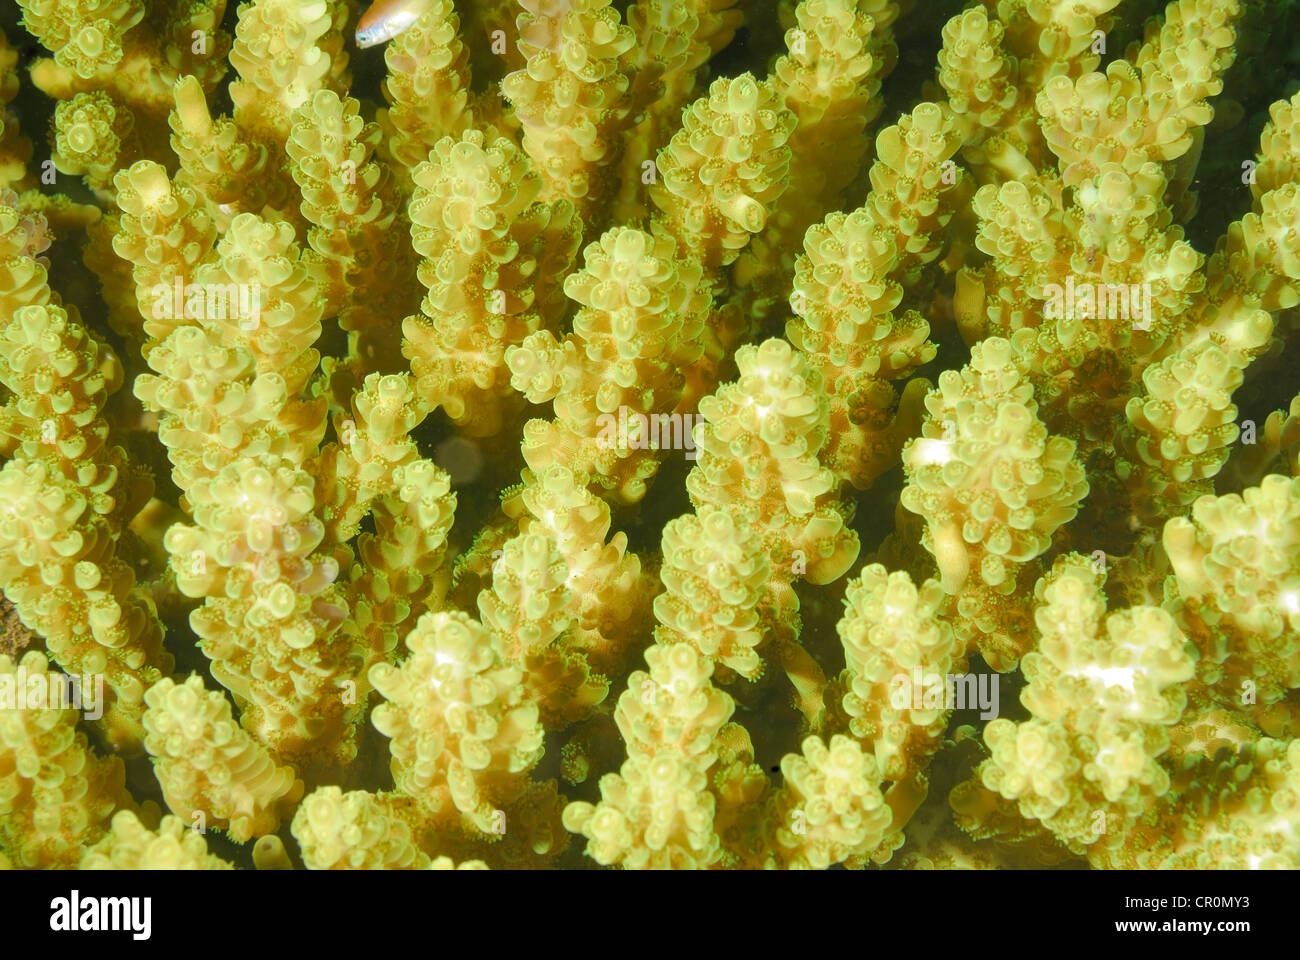 Hard coral Acropora sp., Sclactinia Indo-pacific Ocean, Bali, Tulamben, Indonesia, Asia Stock Photo